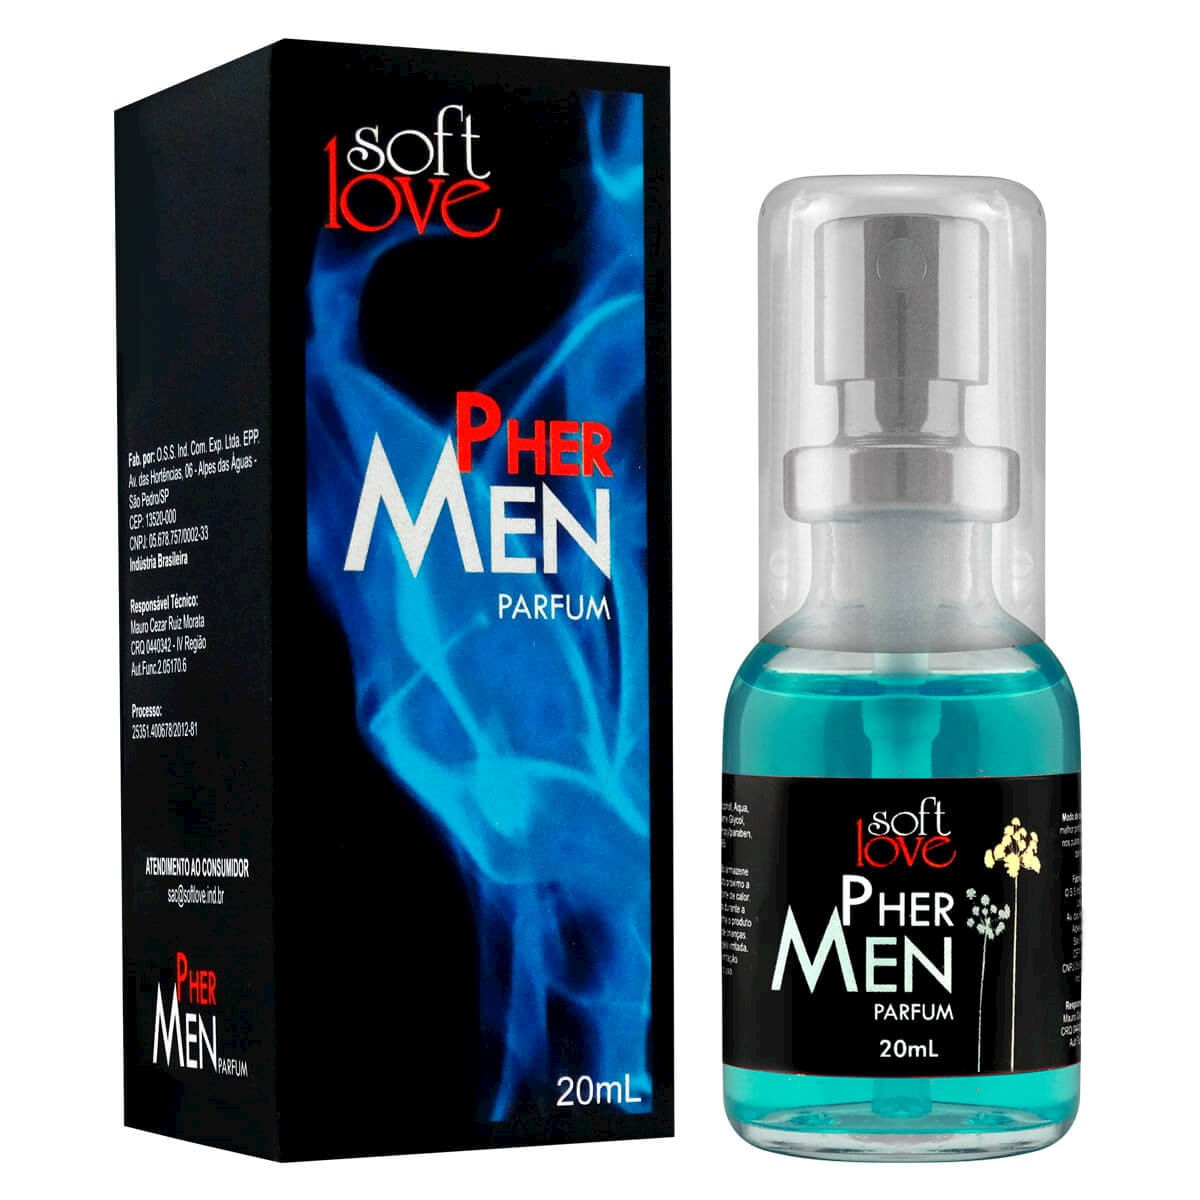 Pher Men Parfum 20ml Soft Love